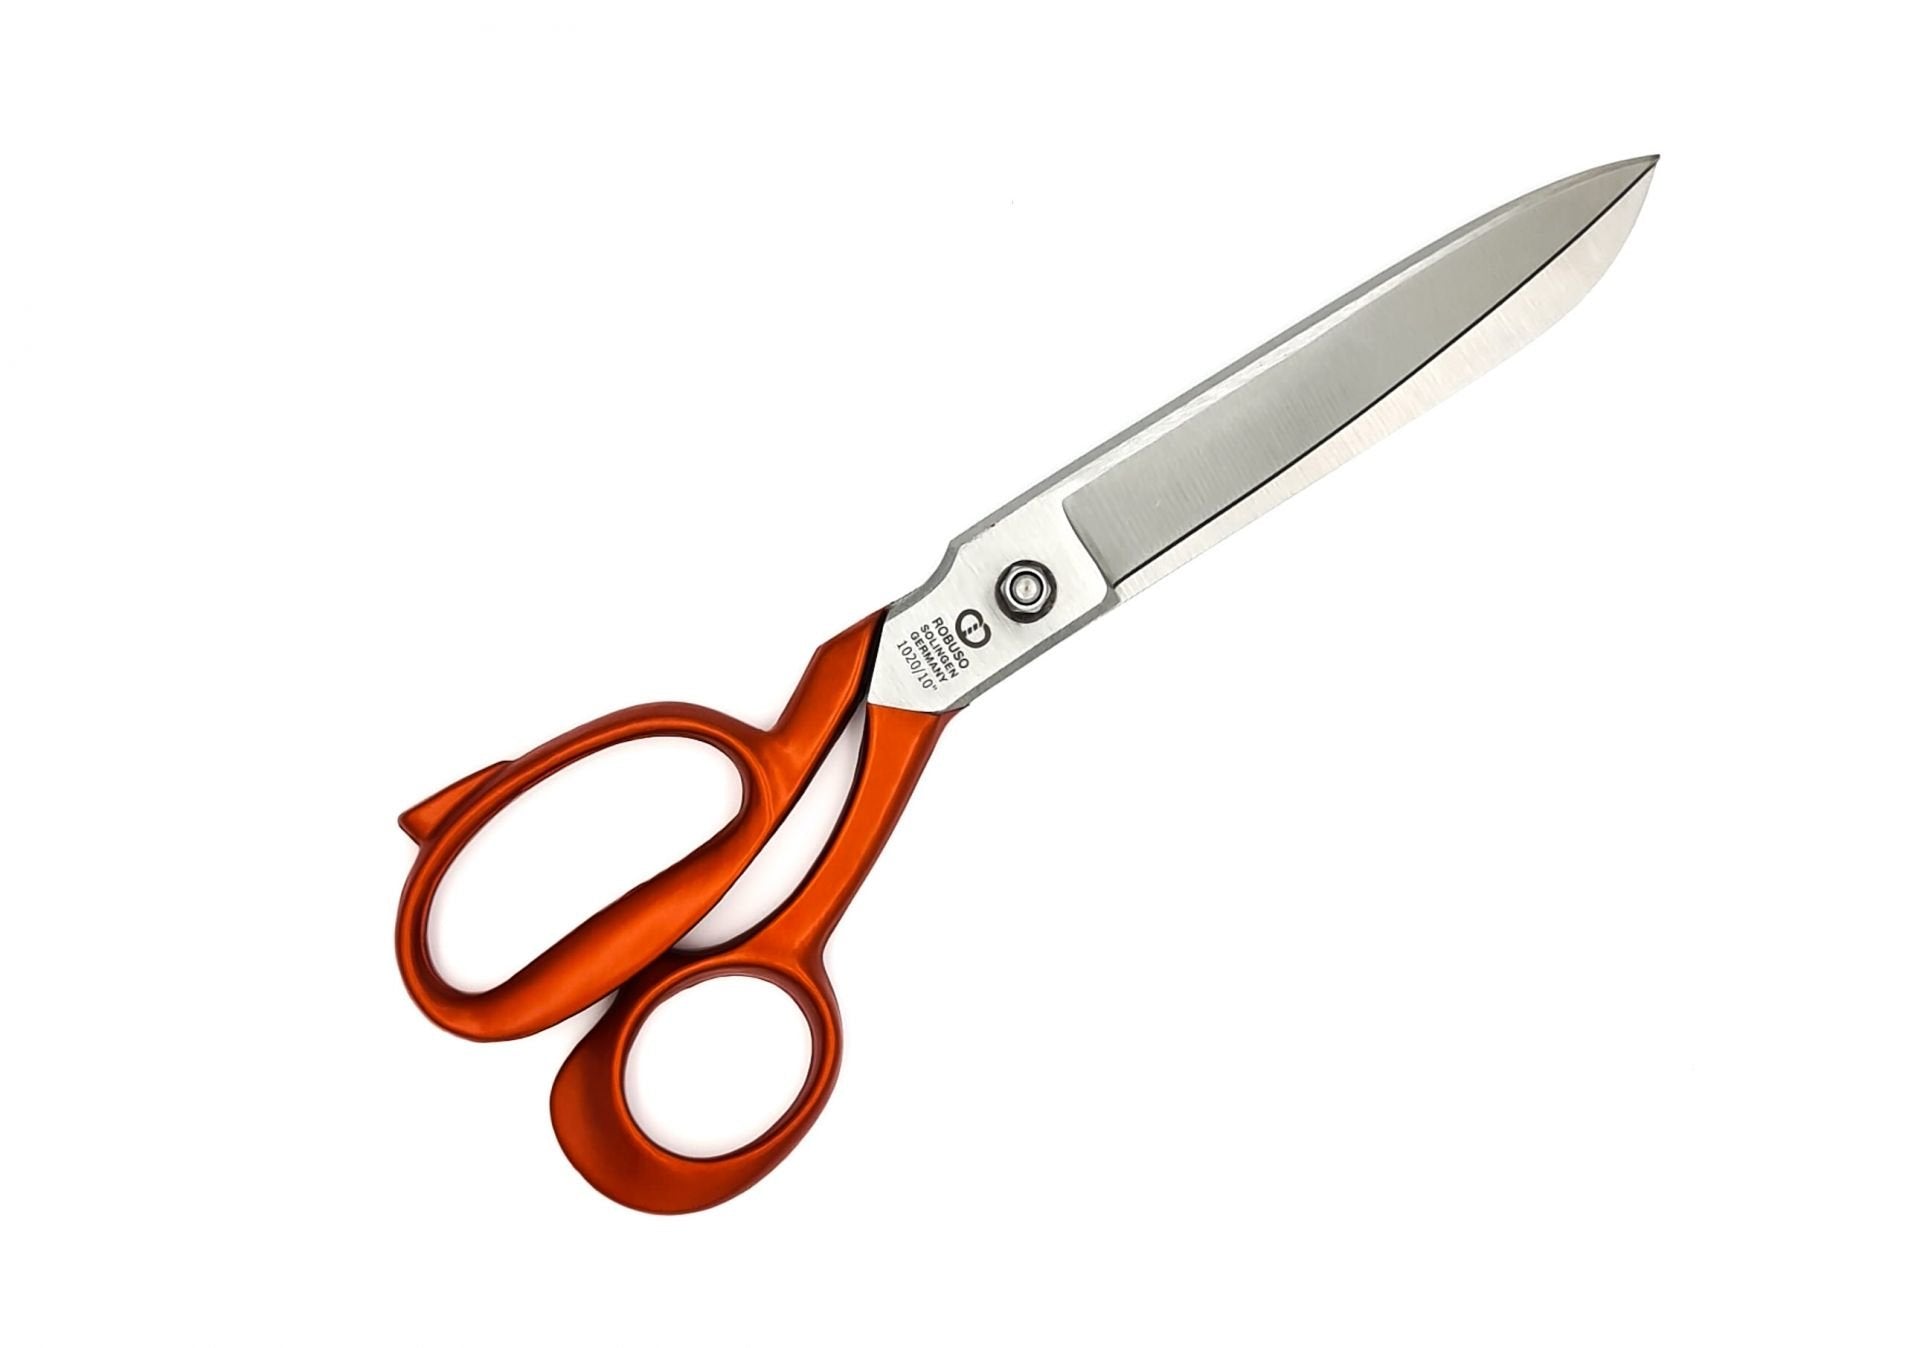 Tailor scissors, 10" / 26 cm